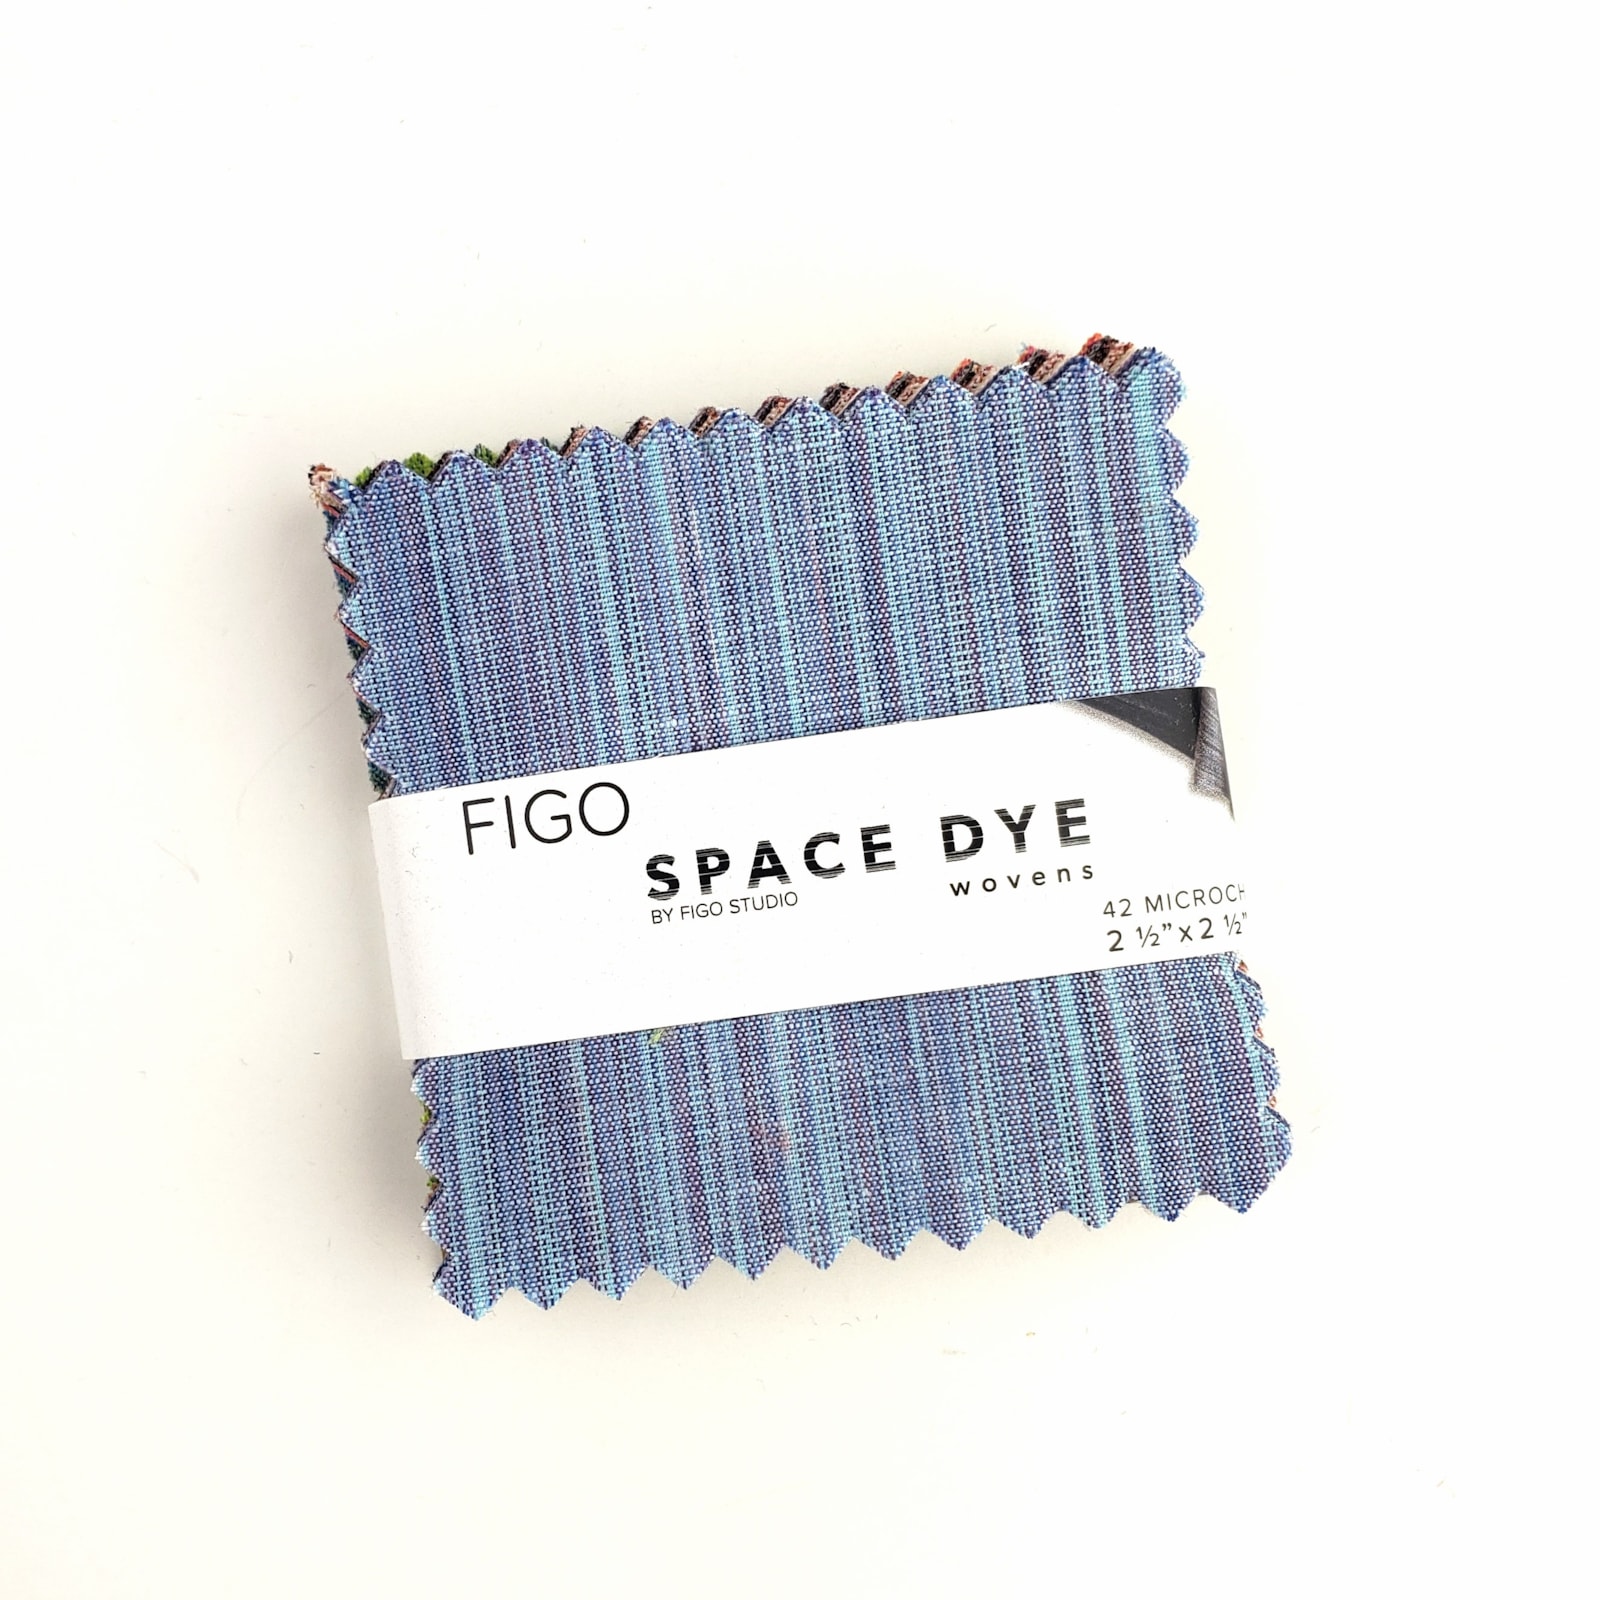 Space Dye Wovens, FIGO Studio, FIGO Fabrics